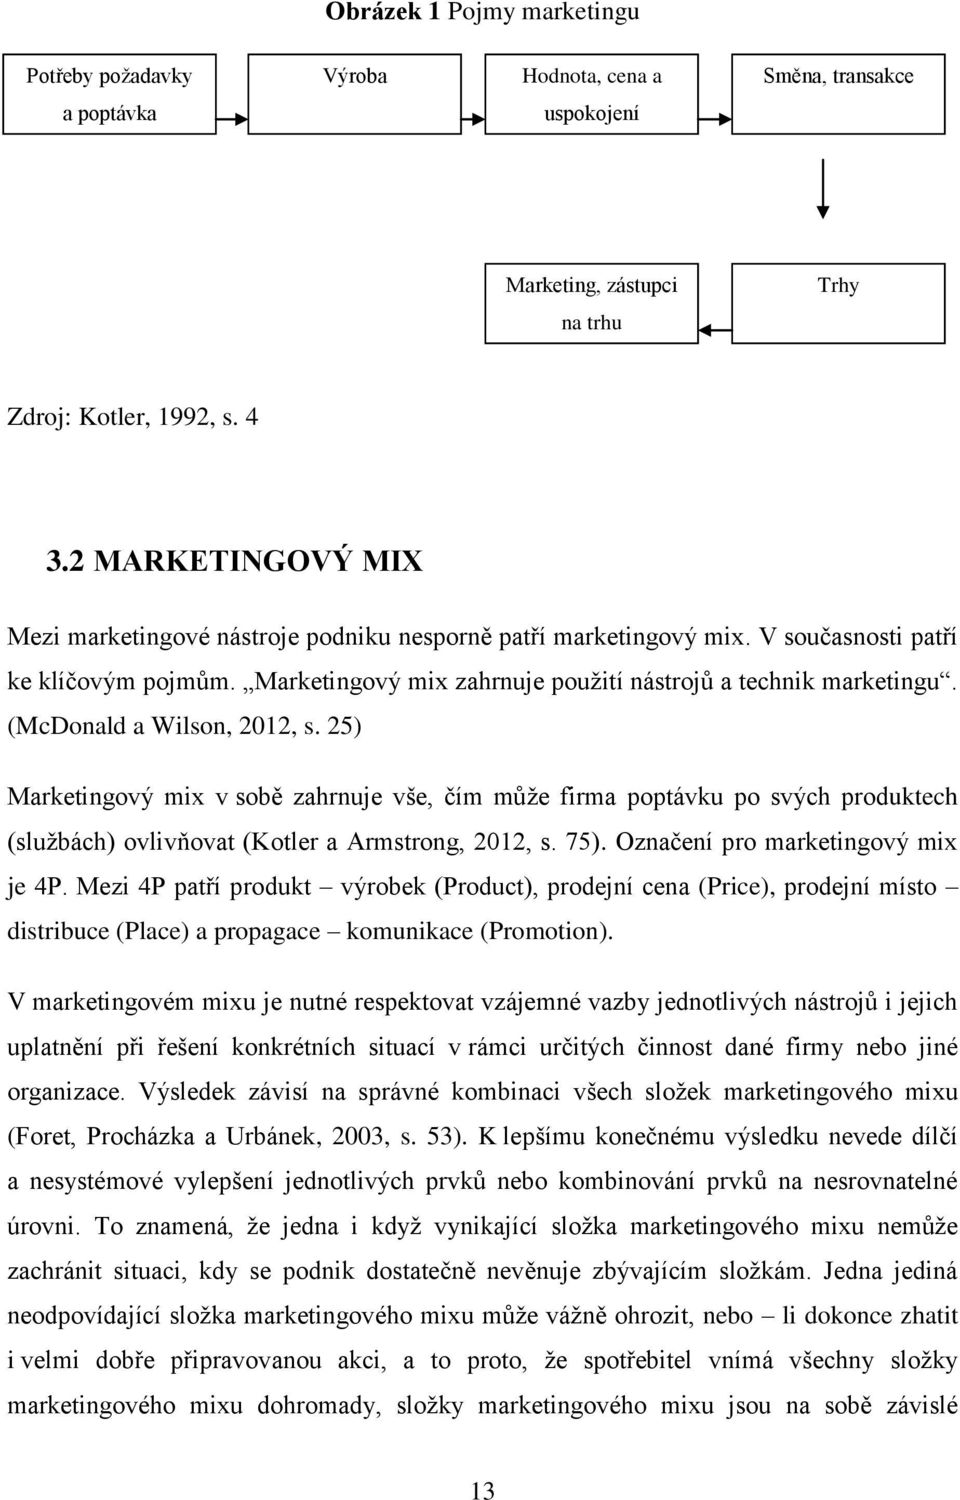 (McDonald a Wilson, 2012, s. 25) Marketingový mix v sobě zahrnuje vše, čím může firma poptávku po svých produktech (službách) ovlivňovat (Kotler a Armstrong, 2012, s. 75).